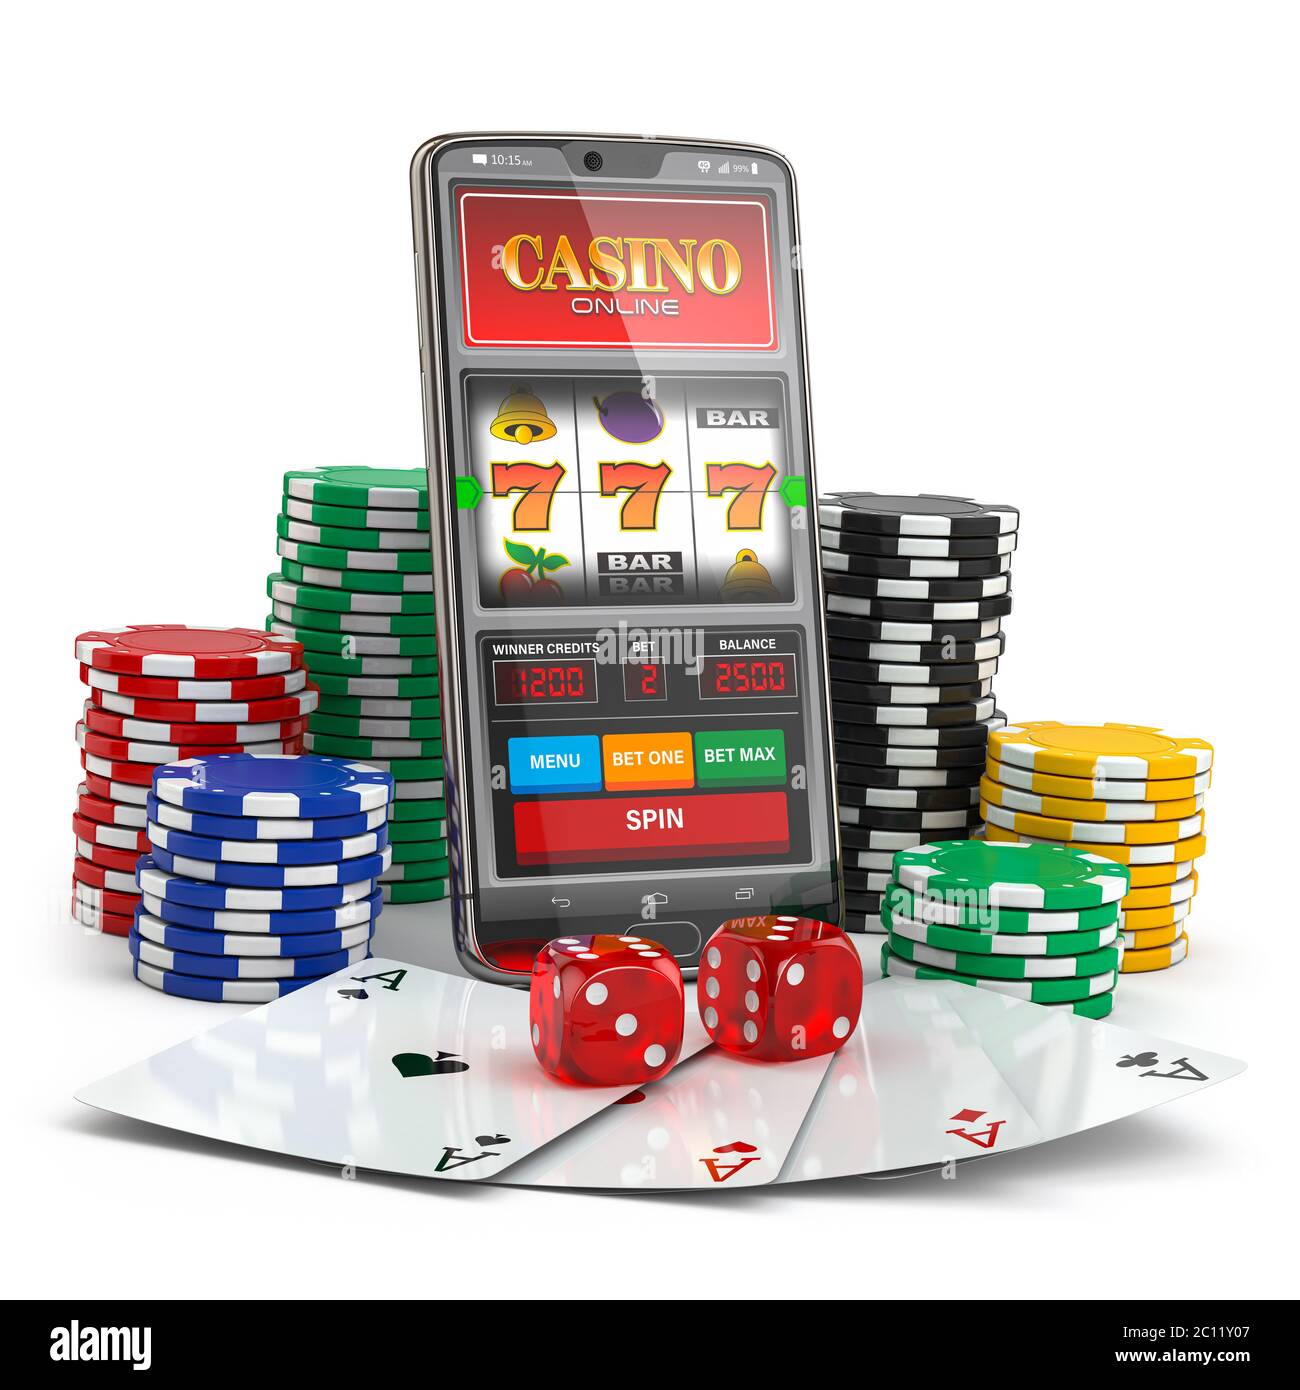 Casino online slot machines free